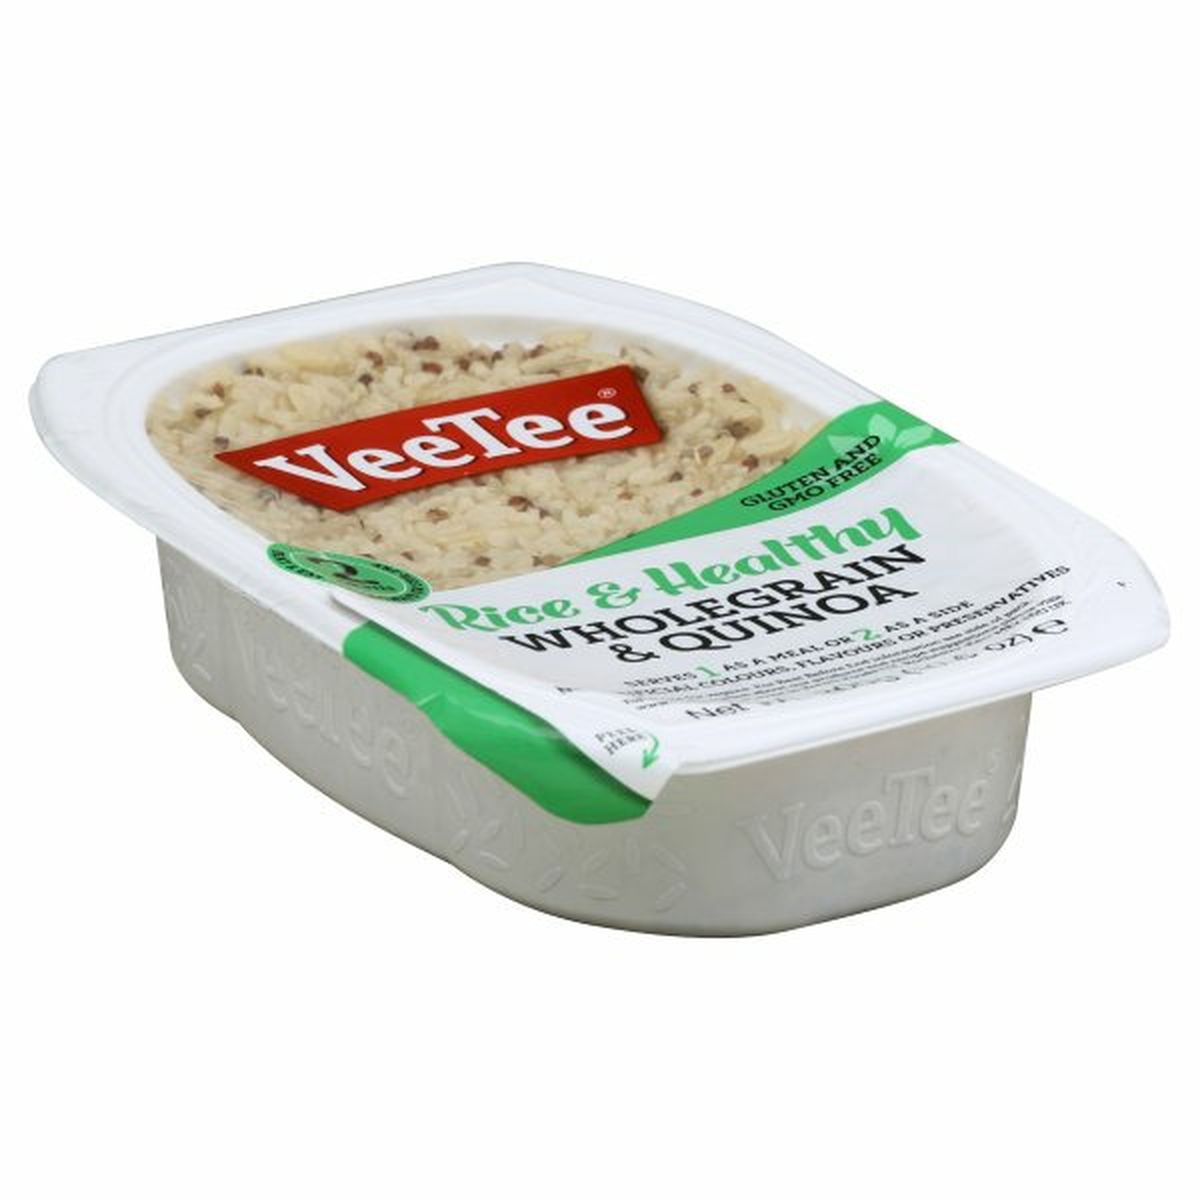 Calories in Veetee Rice & Healthy Brown Rice & Quinoa, Wholegrain